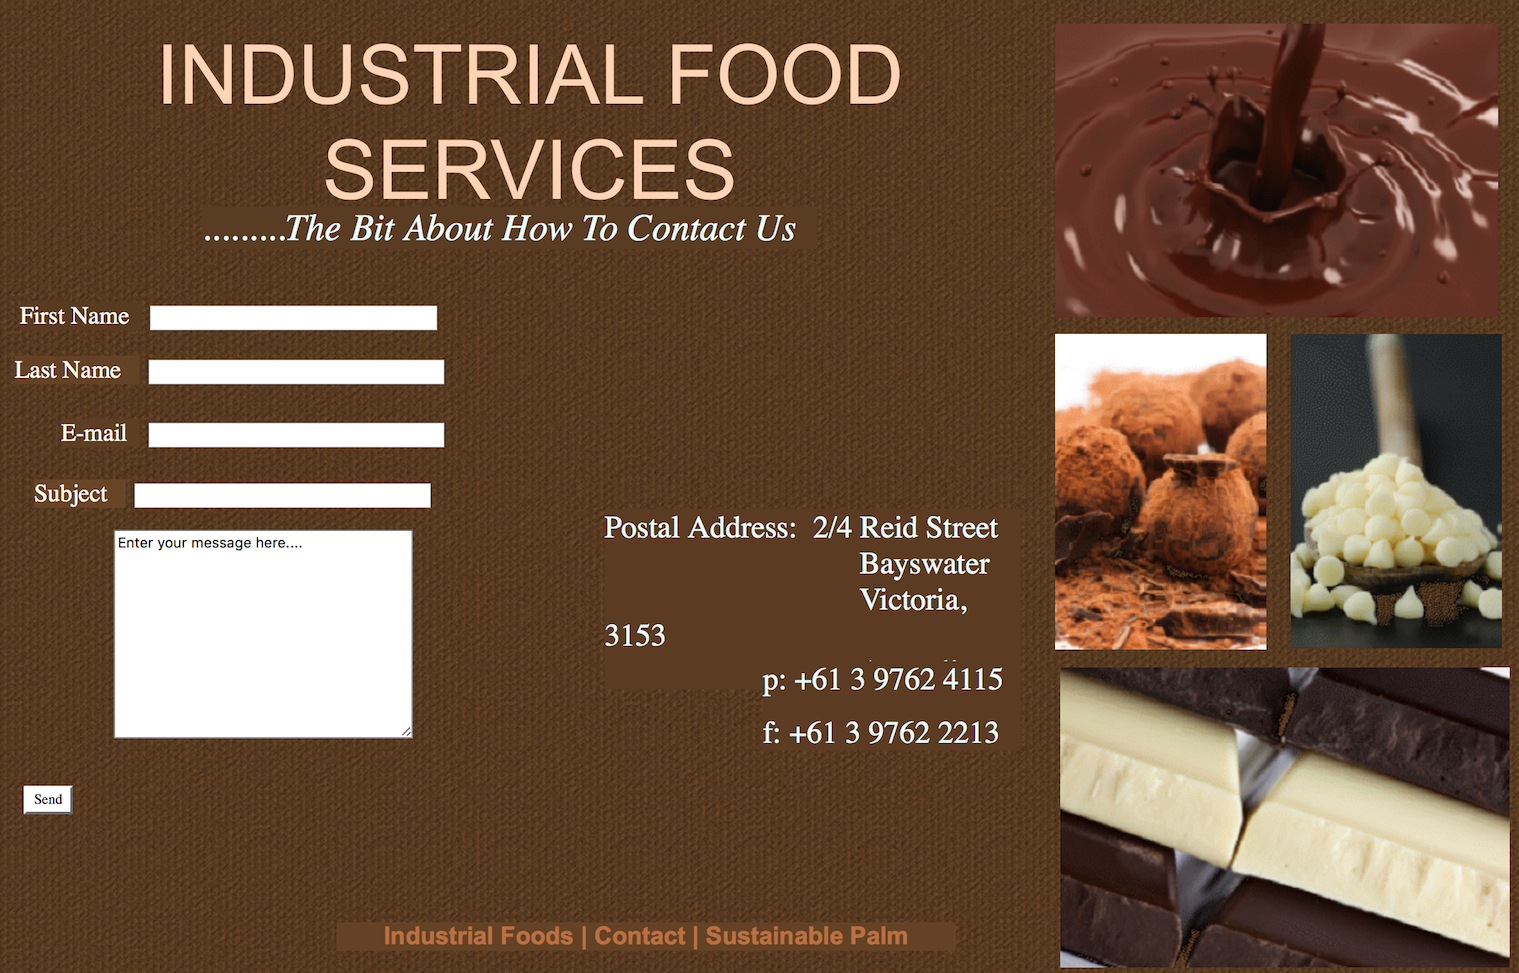 日本食品原料生产商不二制油收购澳洲巧克力和可可生产商 Industrial Food Service